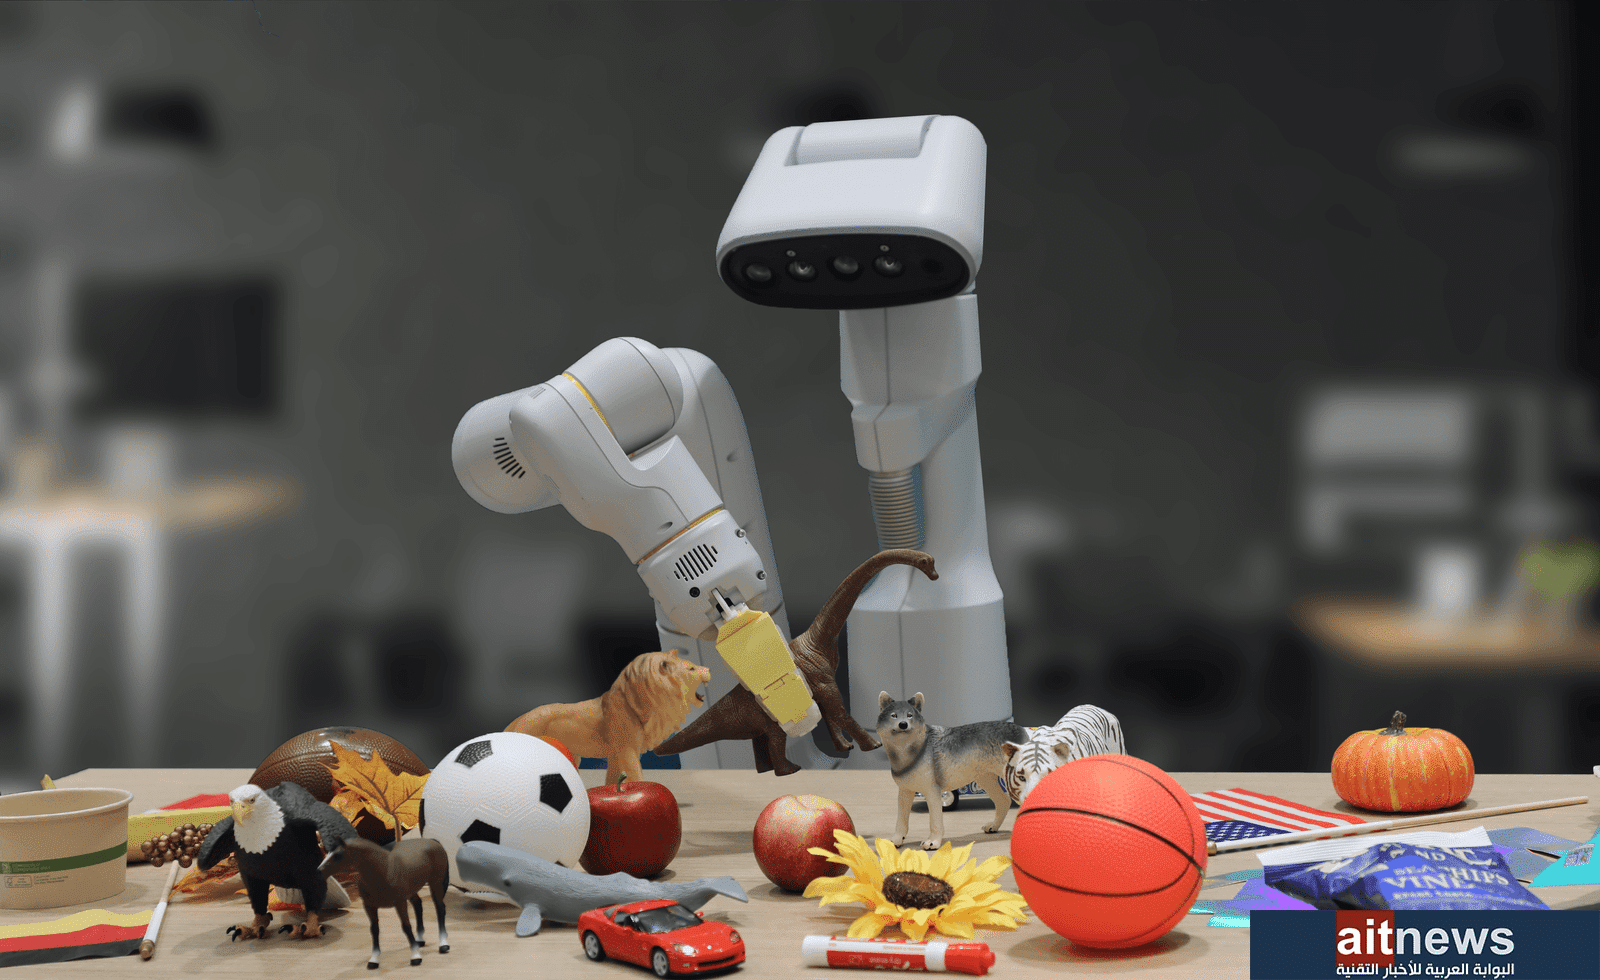 جوجل تُطوِّر ذكاءً اصطناعيًا يُعلِّم الروبوتات التخلص من القمامة